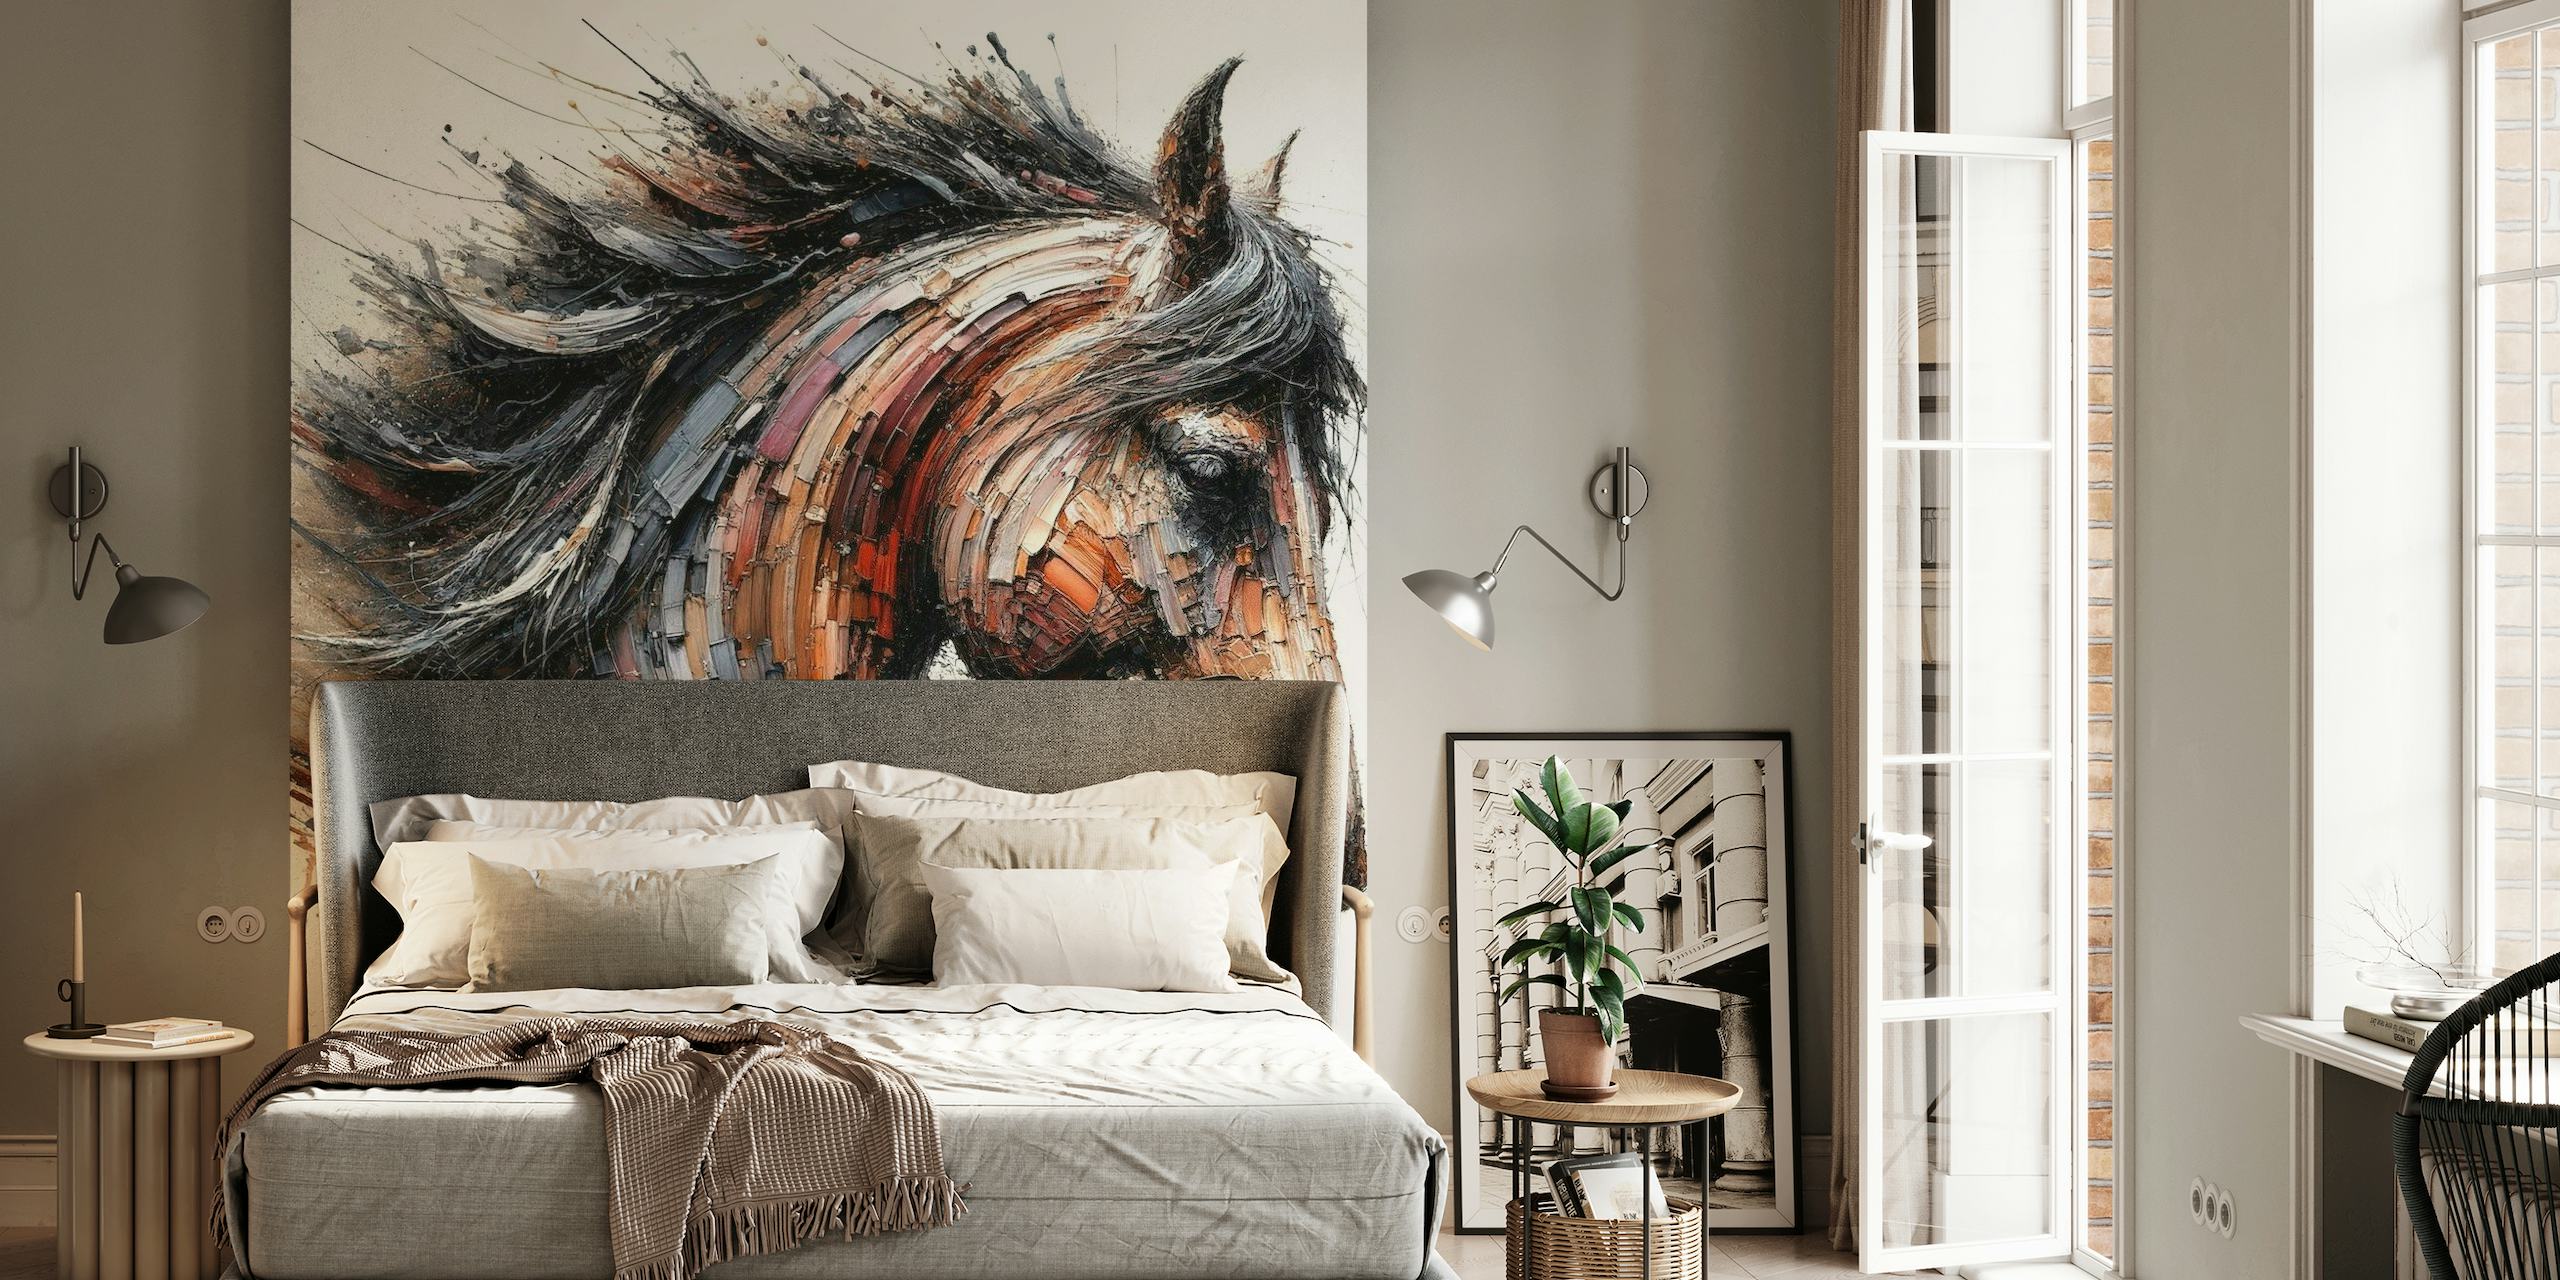 Dynamisk hestevægmaleri med udtryksfulde penselstrøg